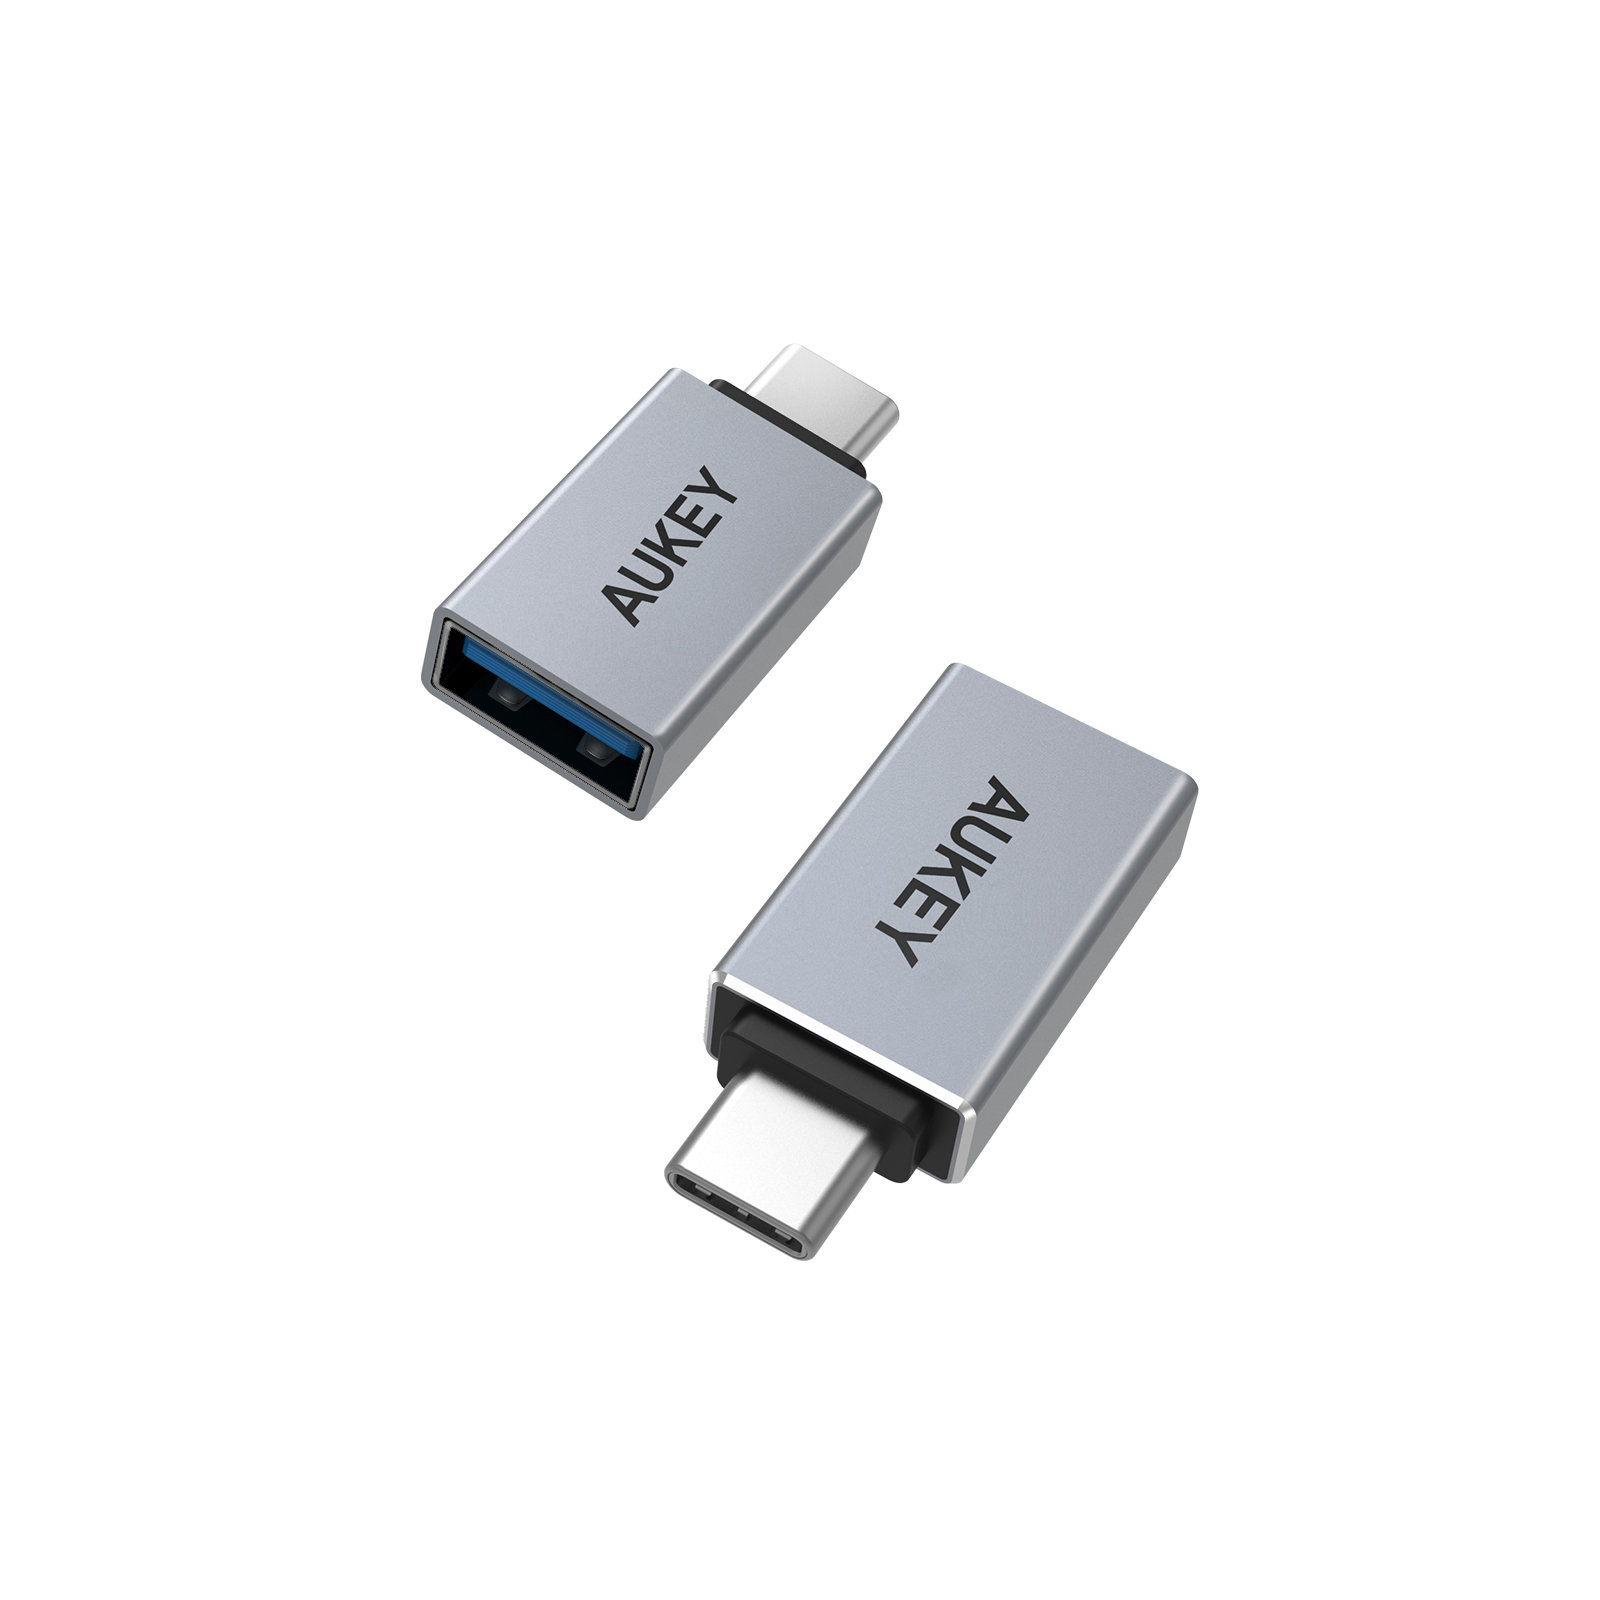 USB-A Type-C 変換アダプター USB 3.0 変換 アダプタ OTG機能 対応し USBメモリ キーボード アプリ不要 大容量の映画 オーディオ 最大5Gbps データ転送できます